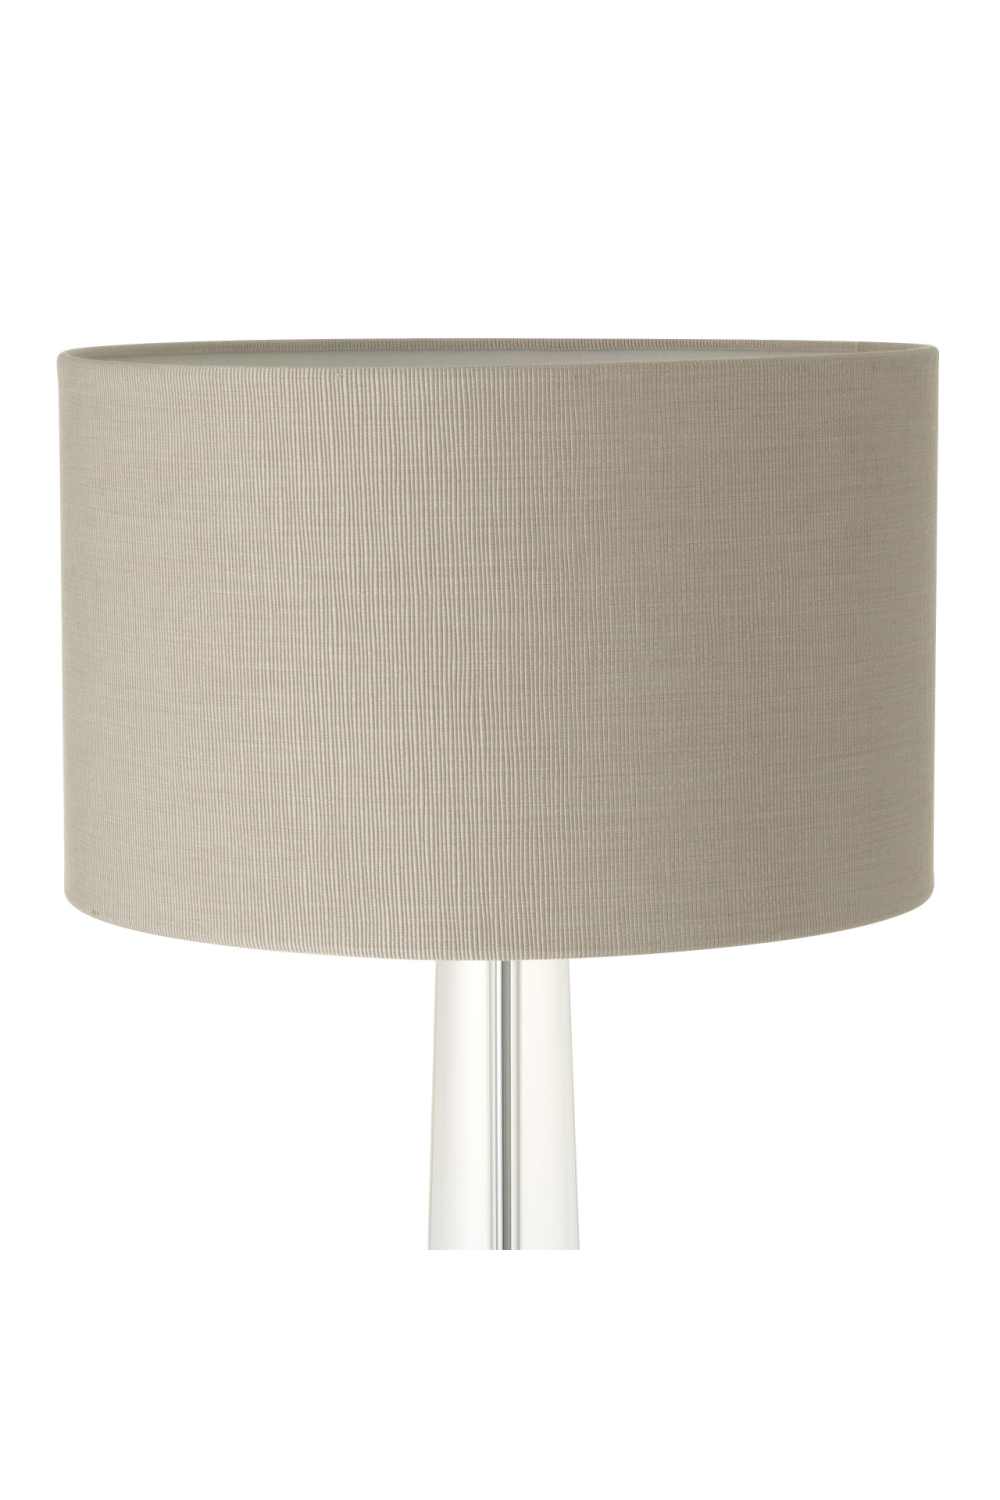 Nickel Table Lamp | Eichholtz Oasis | OROA